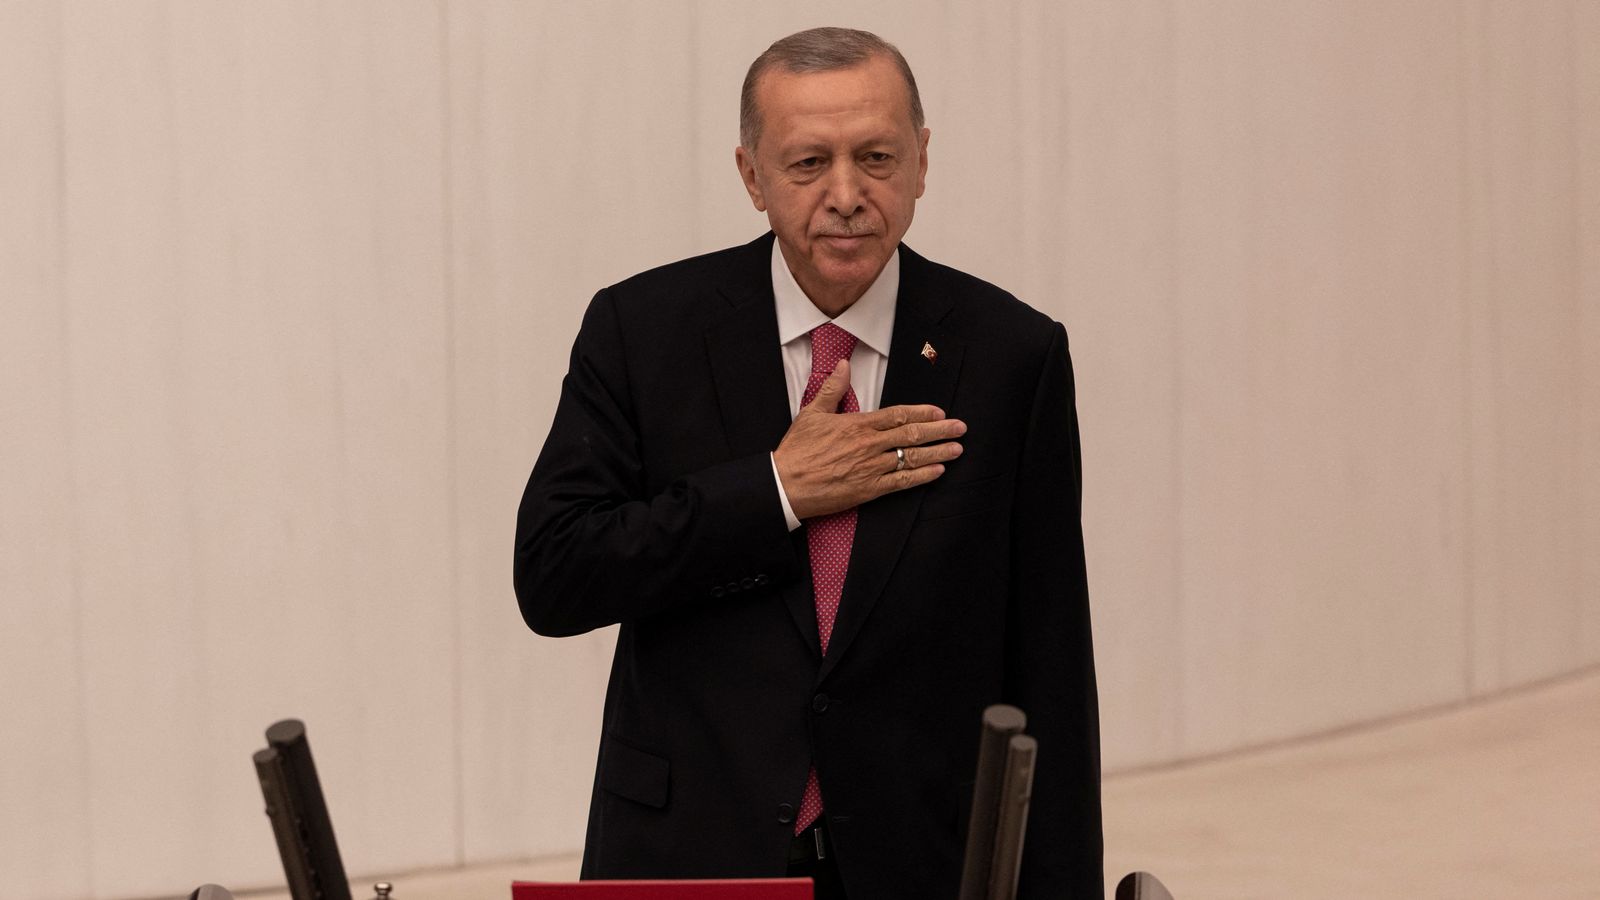 Recep Tayyip Erdogan prêté serment comme président de la Turquie pour un troisième mandat sans précédent |  Nouvelles du monde